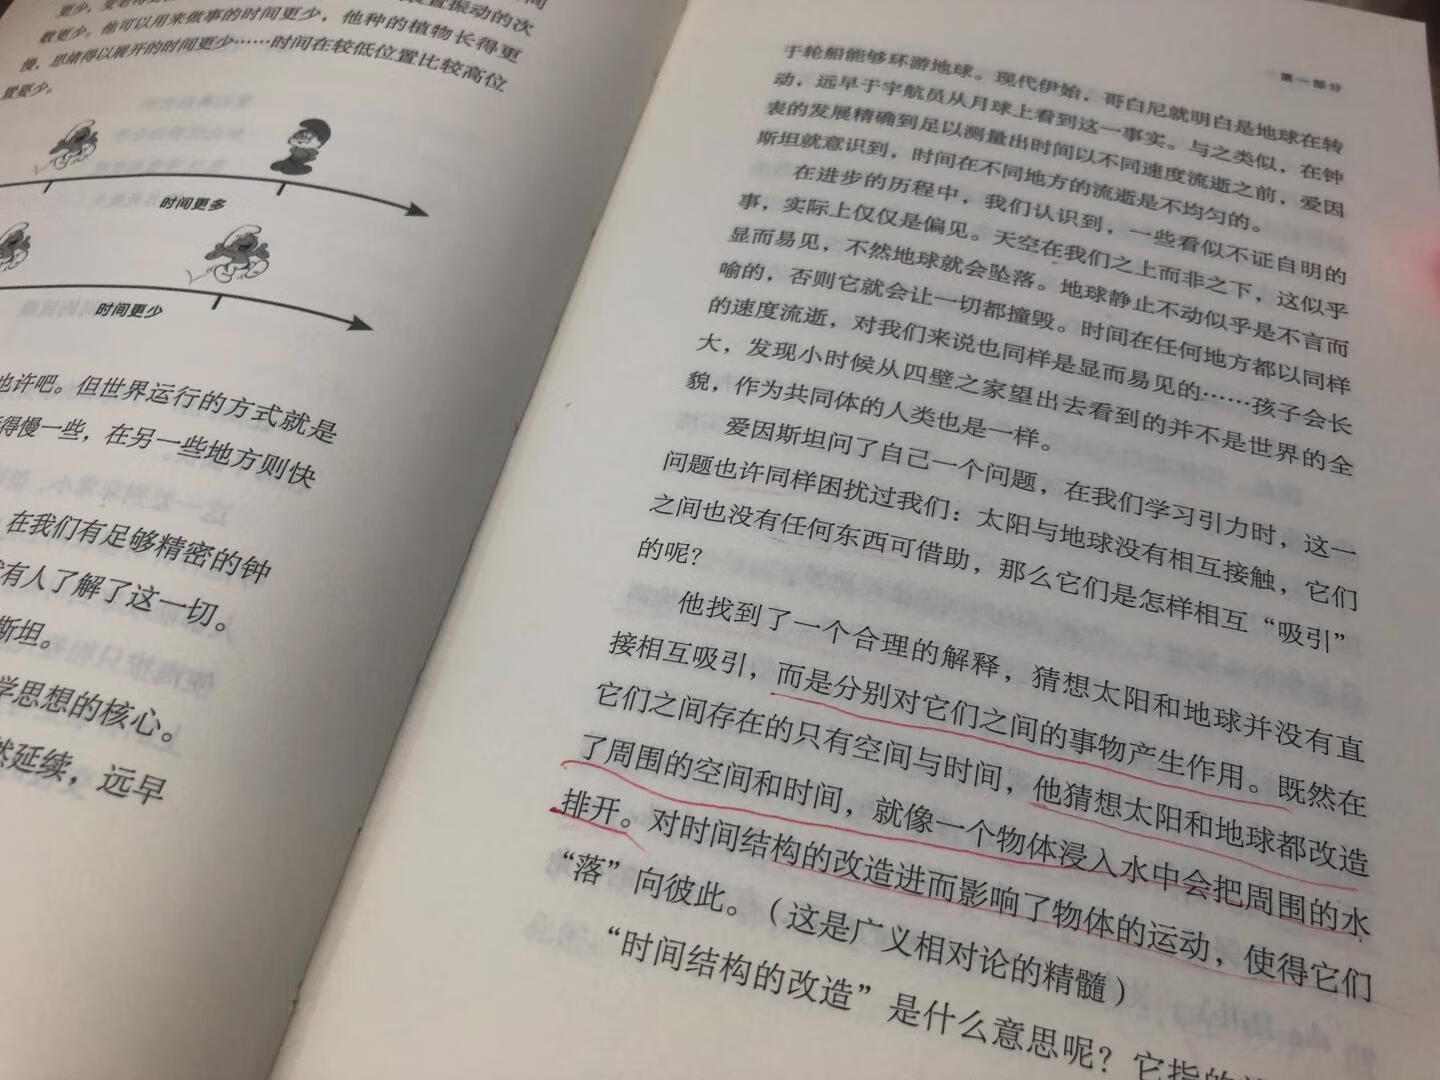 因为卷福读了这本书的英文版关注到的，终于盼到中文版了，好开心，书挺精美的，读了第一章，没想到还讲得挺明白的，居然还能写得这么美，比国内的书好太多太多，怪不得在全球都很火……